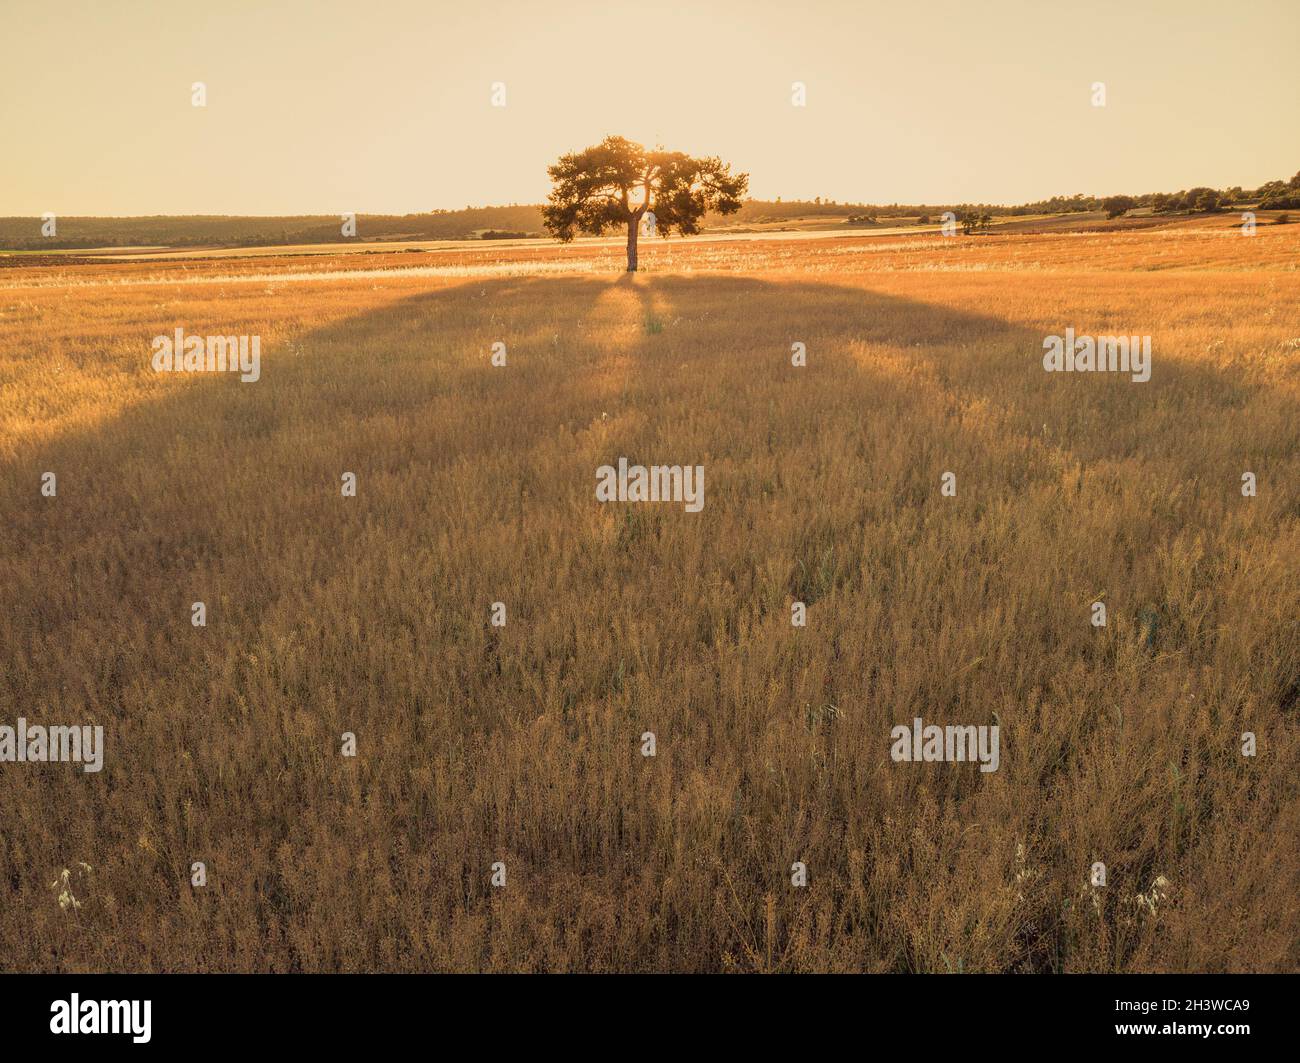 Wunderschön isolierter Baum mit Hintergrundbeleuchtung in der Sonnenuntergangslandschaft Stockfoto